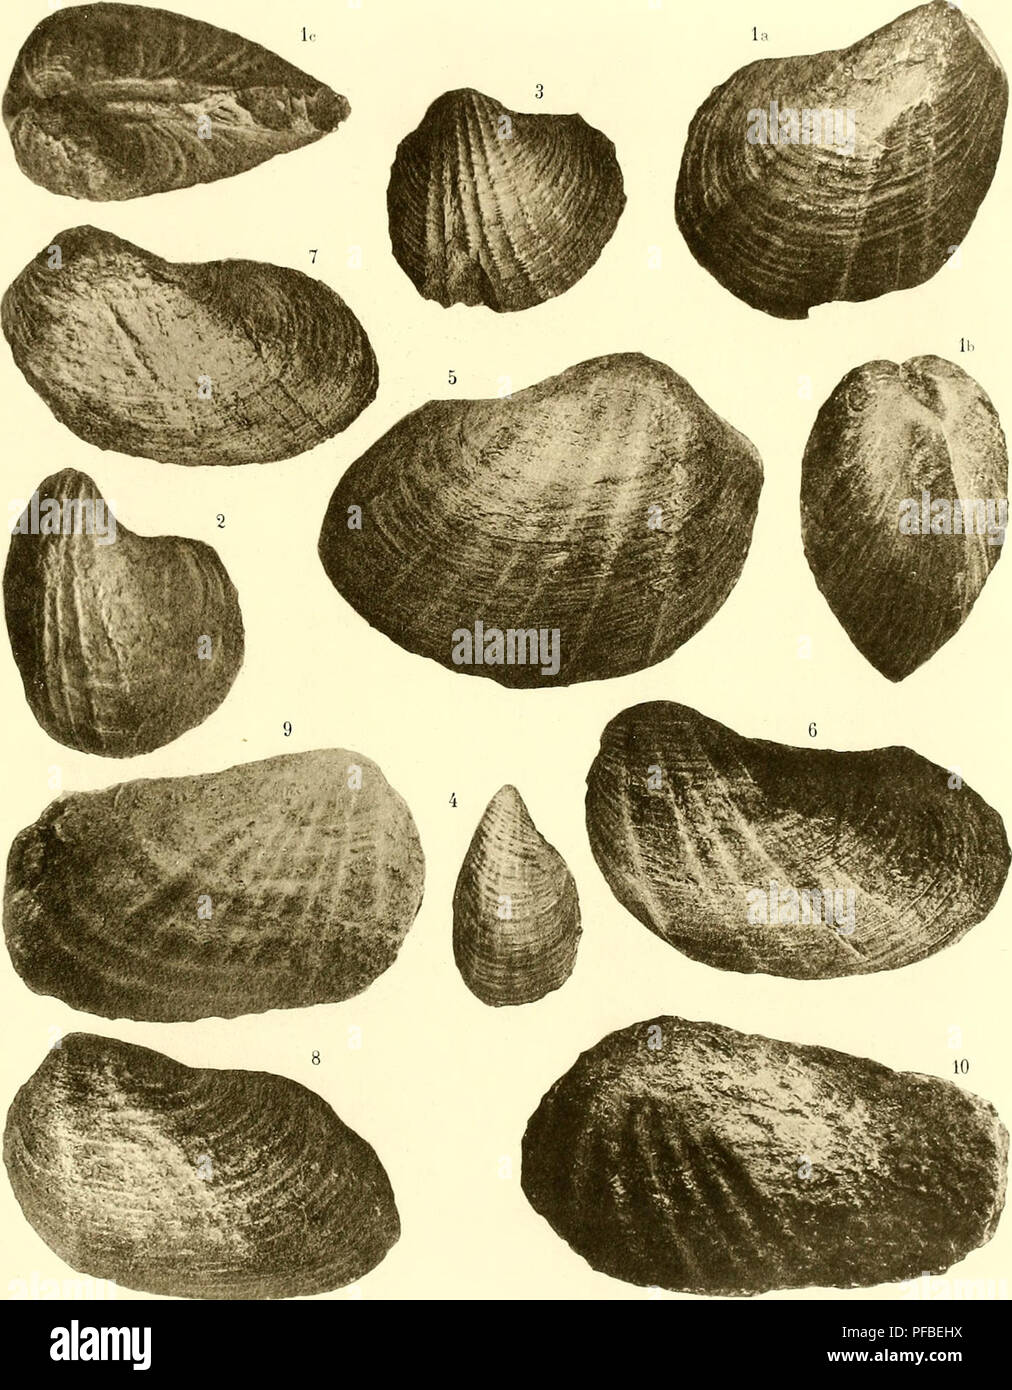 . Descrizione de la faune du jurassique Portogallo: Mollusques Lamellibranches. FAUNE JUÎl/SSIQUE DU PORTOGALLO au ("HOFFAT ,,'iiti (Mliljranchos. PL //.. cTicf e' ^Tl(9.0). È'aiU:o. o^'-é-otc-t^:. S. ?CXP sono in grado--oul.. Si prega di notare che queste immagini vengono estratte dalla pagina sottoposta a scansione di immagini che possono essere state migliorate digitalmente per la leggibilità - Colorazione e aspetto di queste illustrazioni potrebbero non perfettamente assomigliano al lavoro originale. Choffat, Paolo, 1849-. Lisbonne. Imprimerie de l'Académie Royale des Sciences Foto Stock